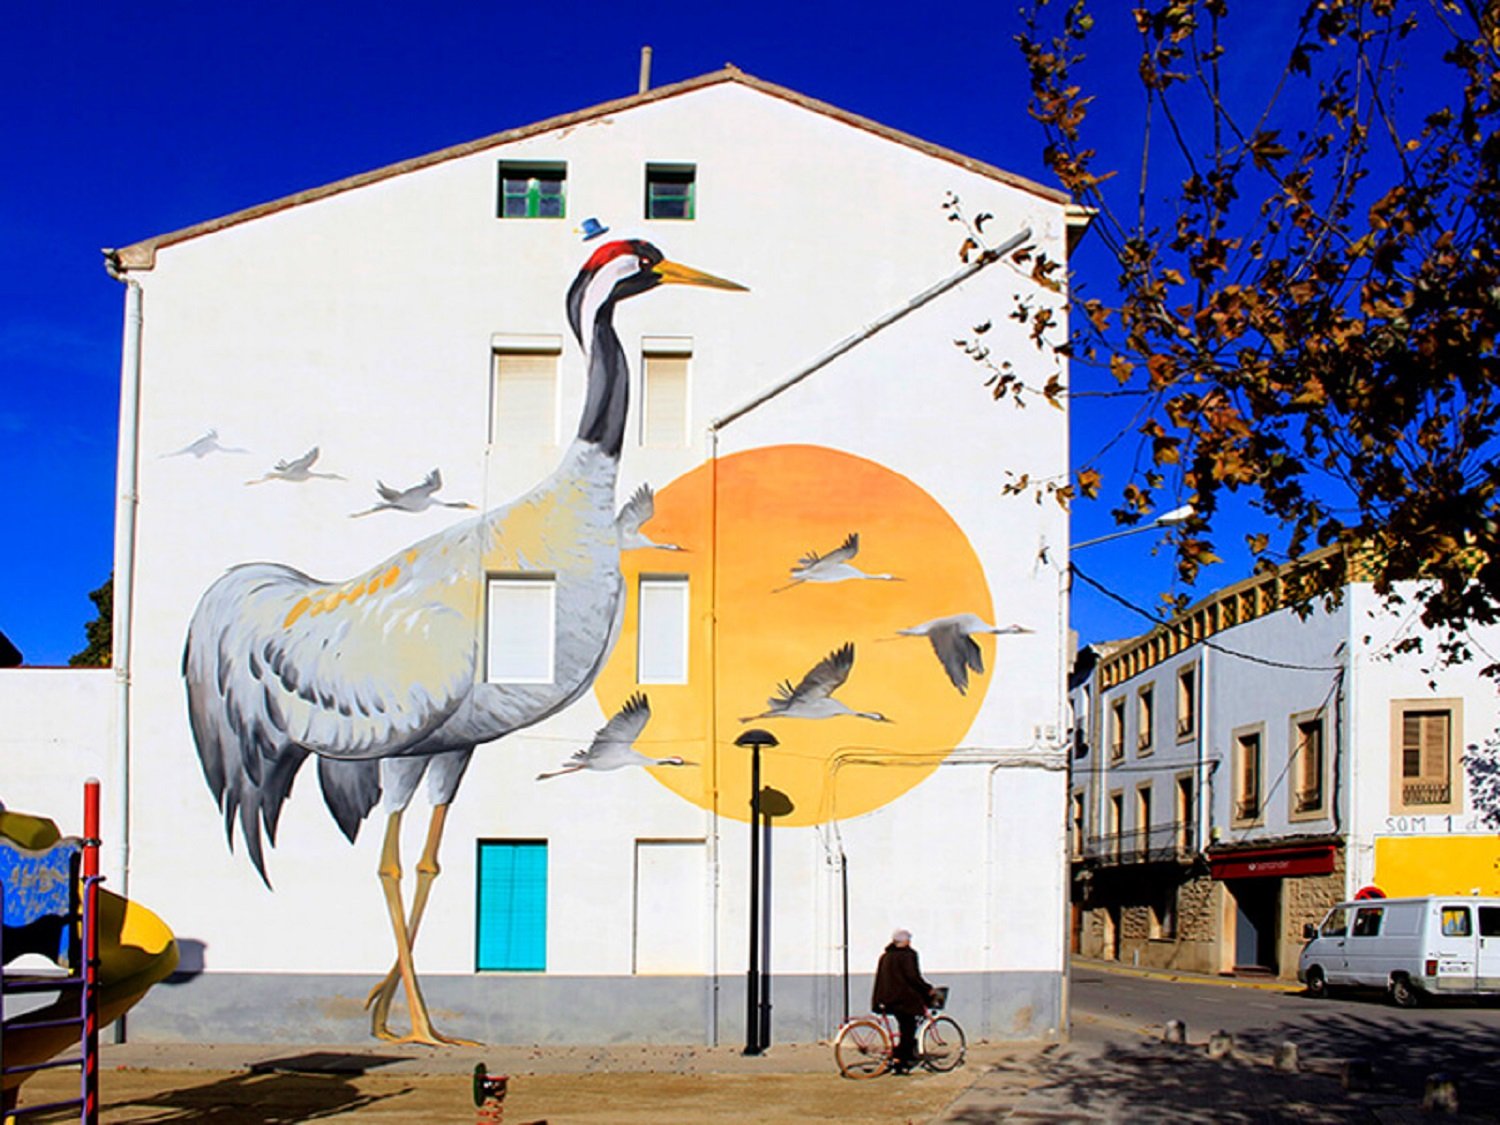 La enciclopedia mural que llena de pájaros gigantes las calles de Ivars d'Urgell